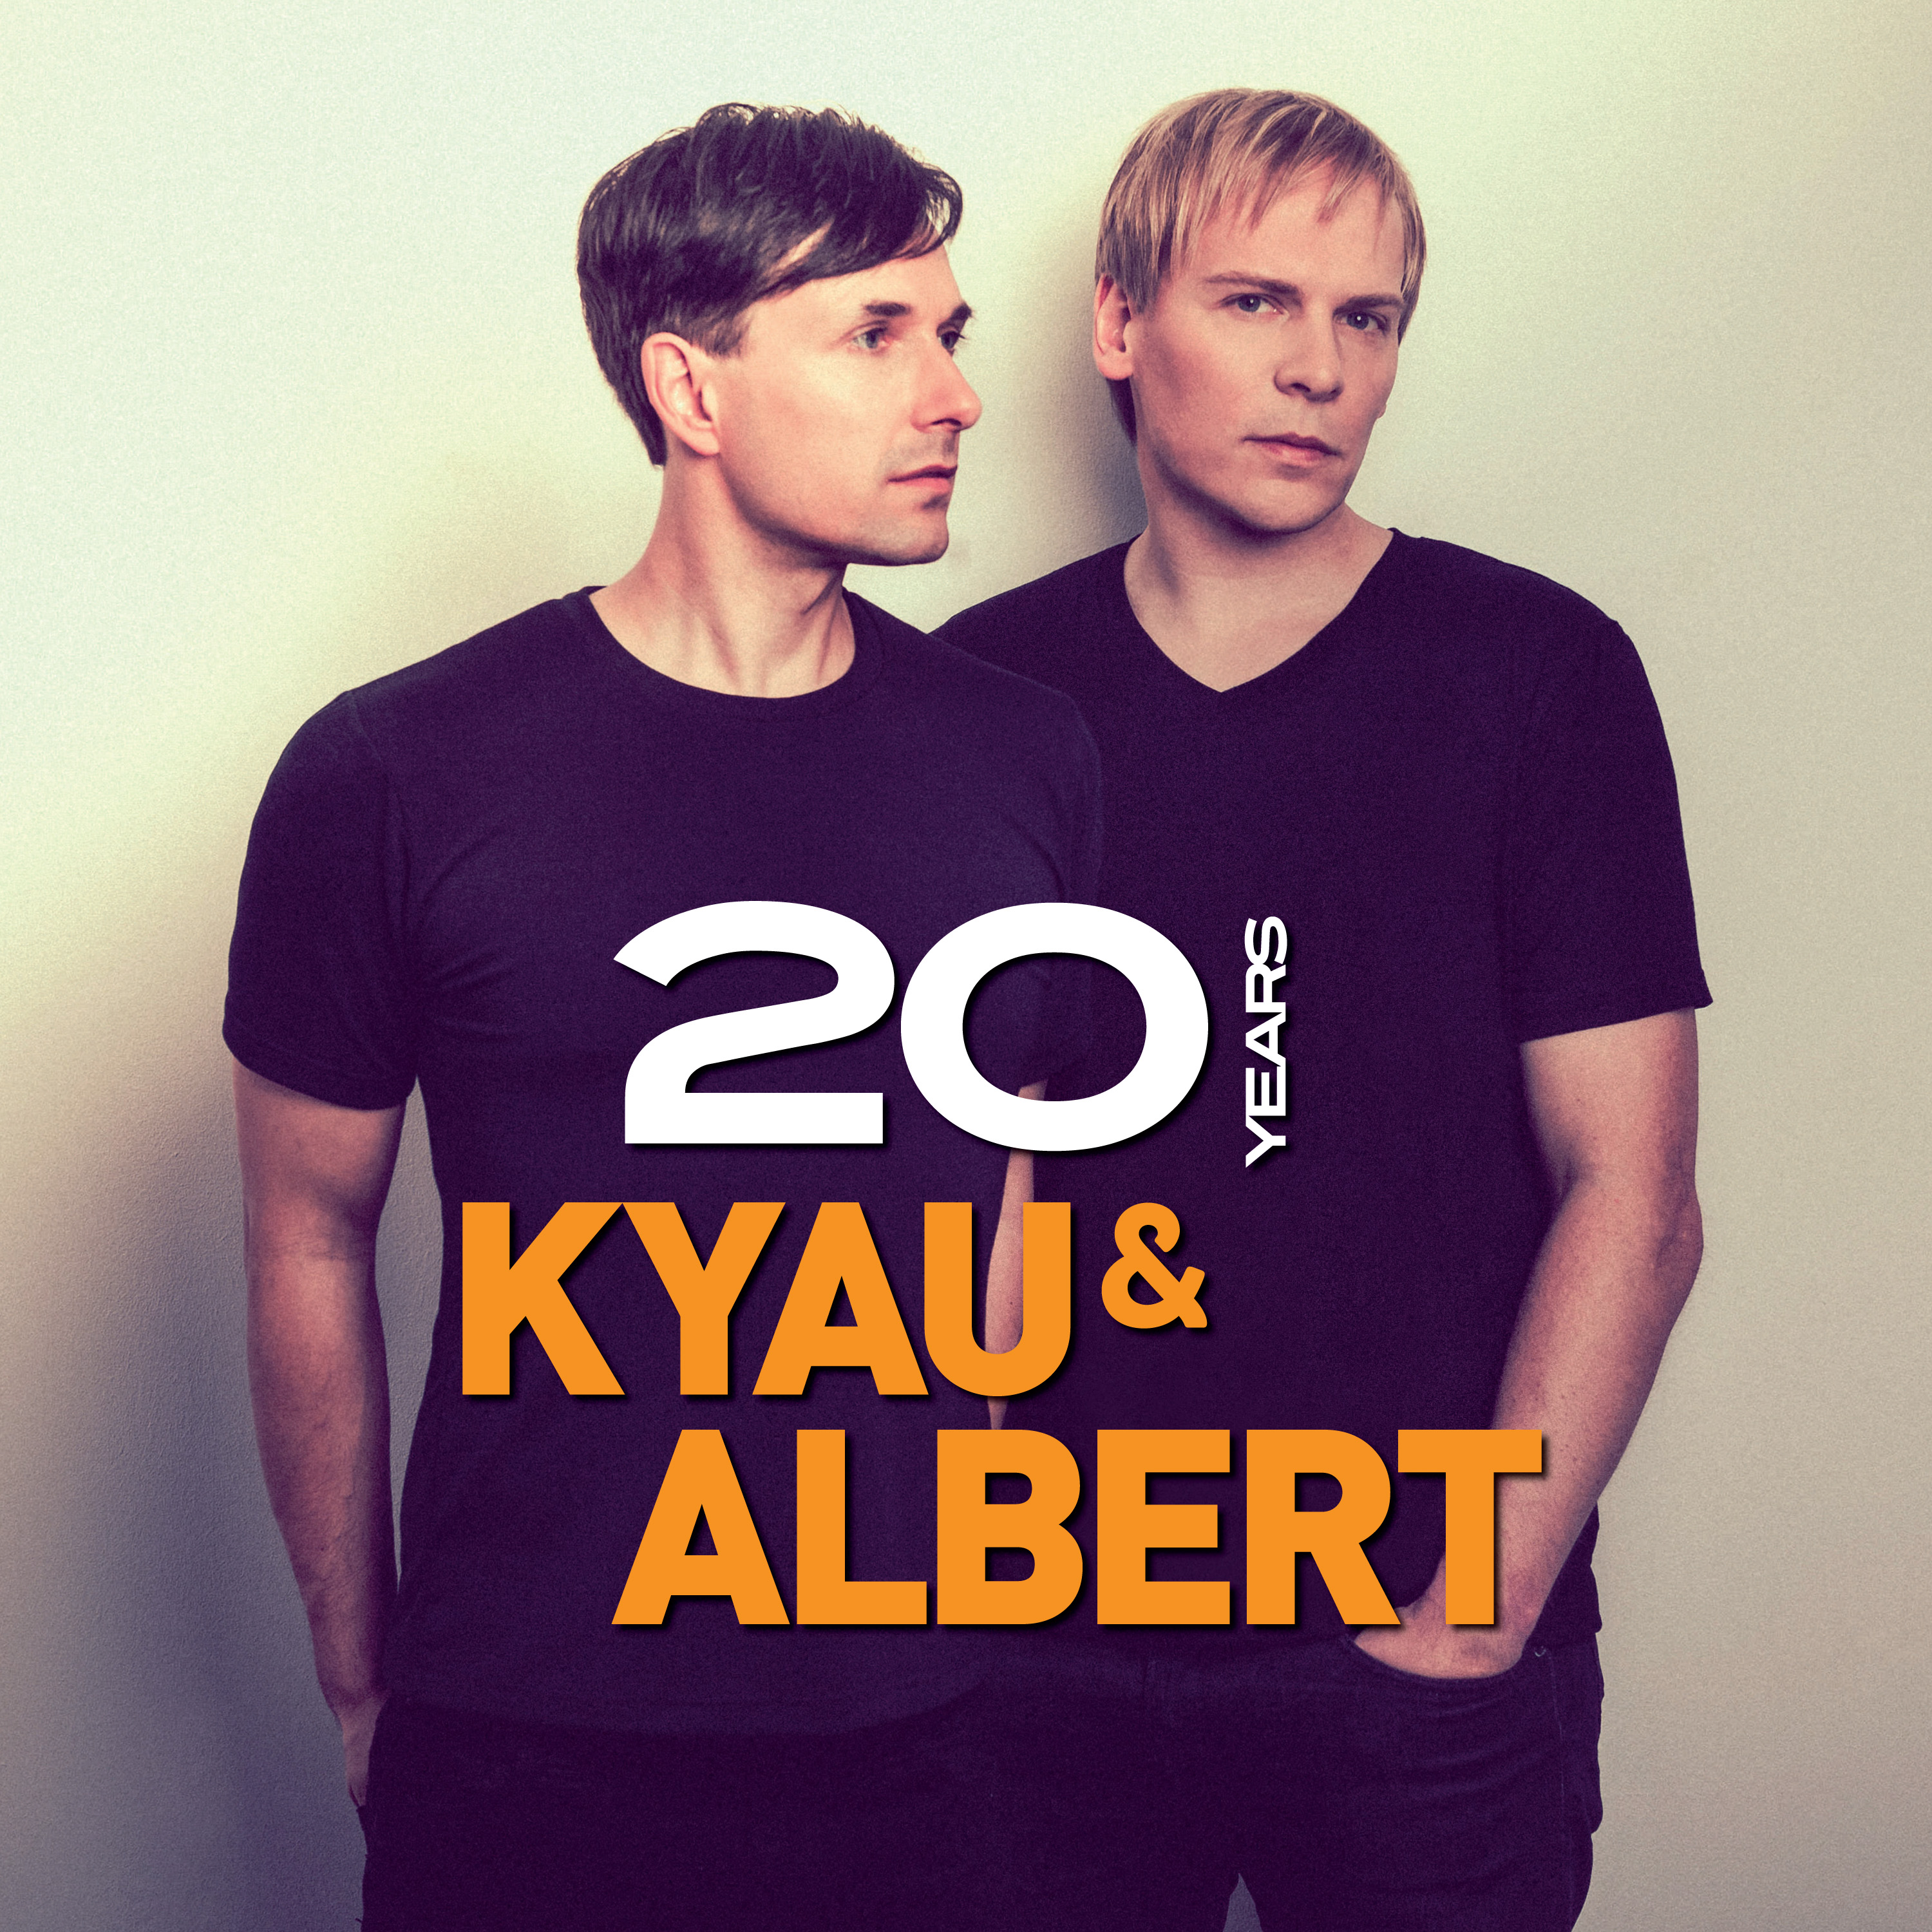 Kyau & Albert - 20 years the album